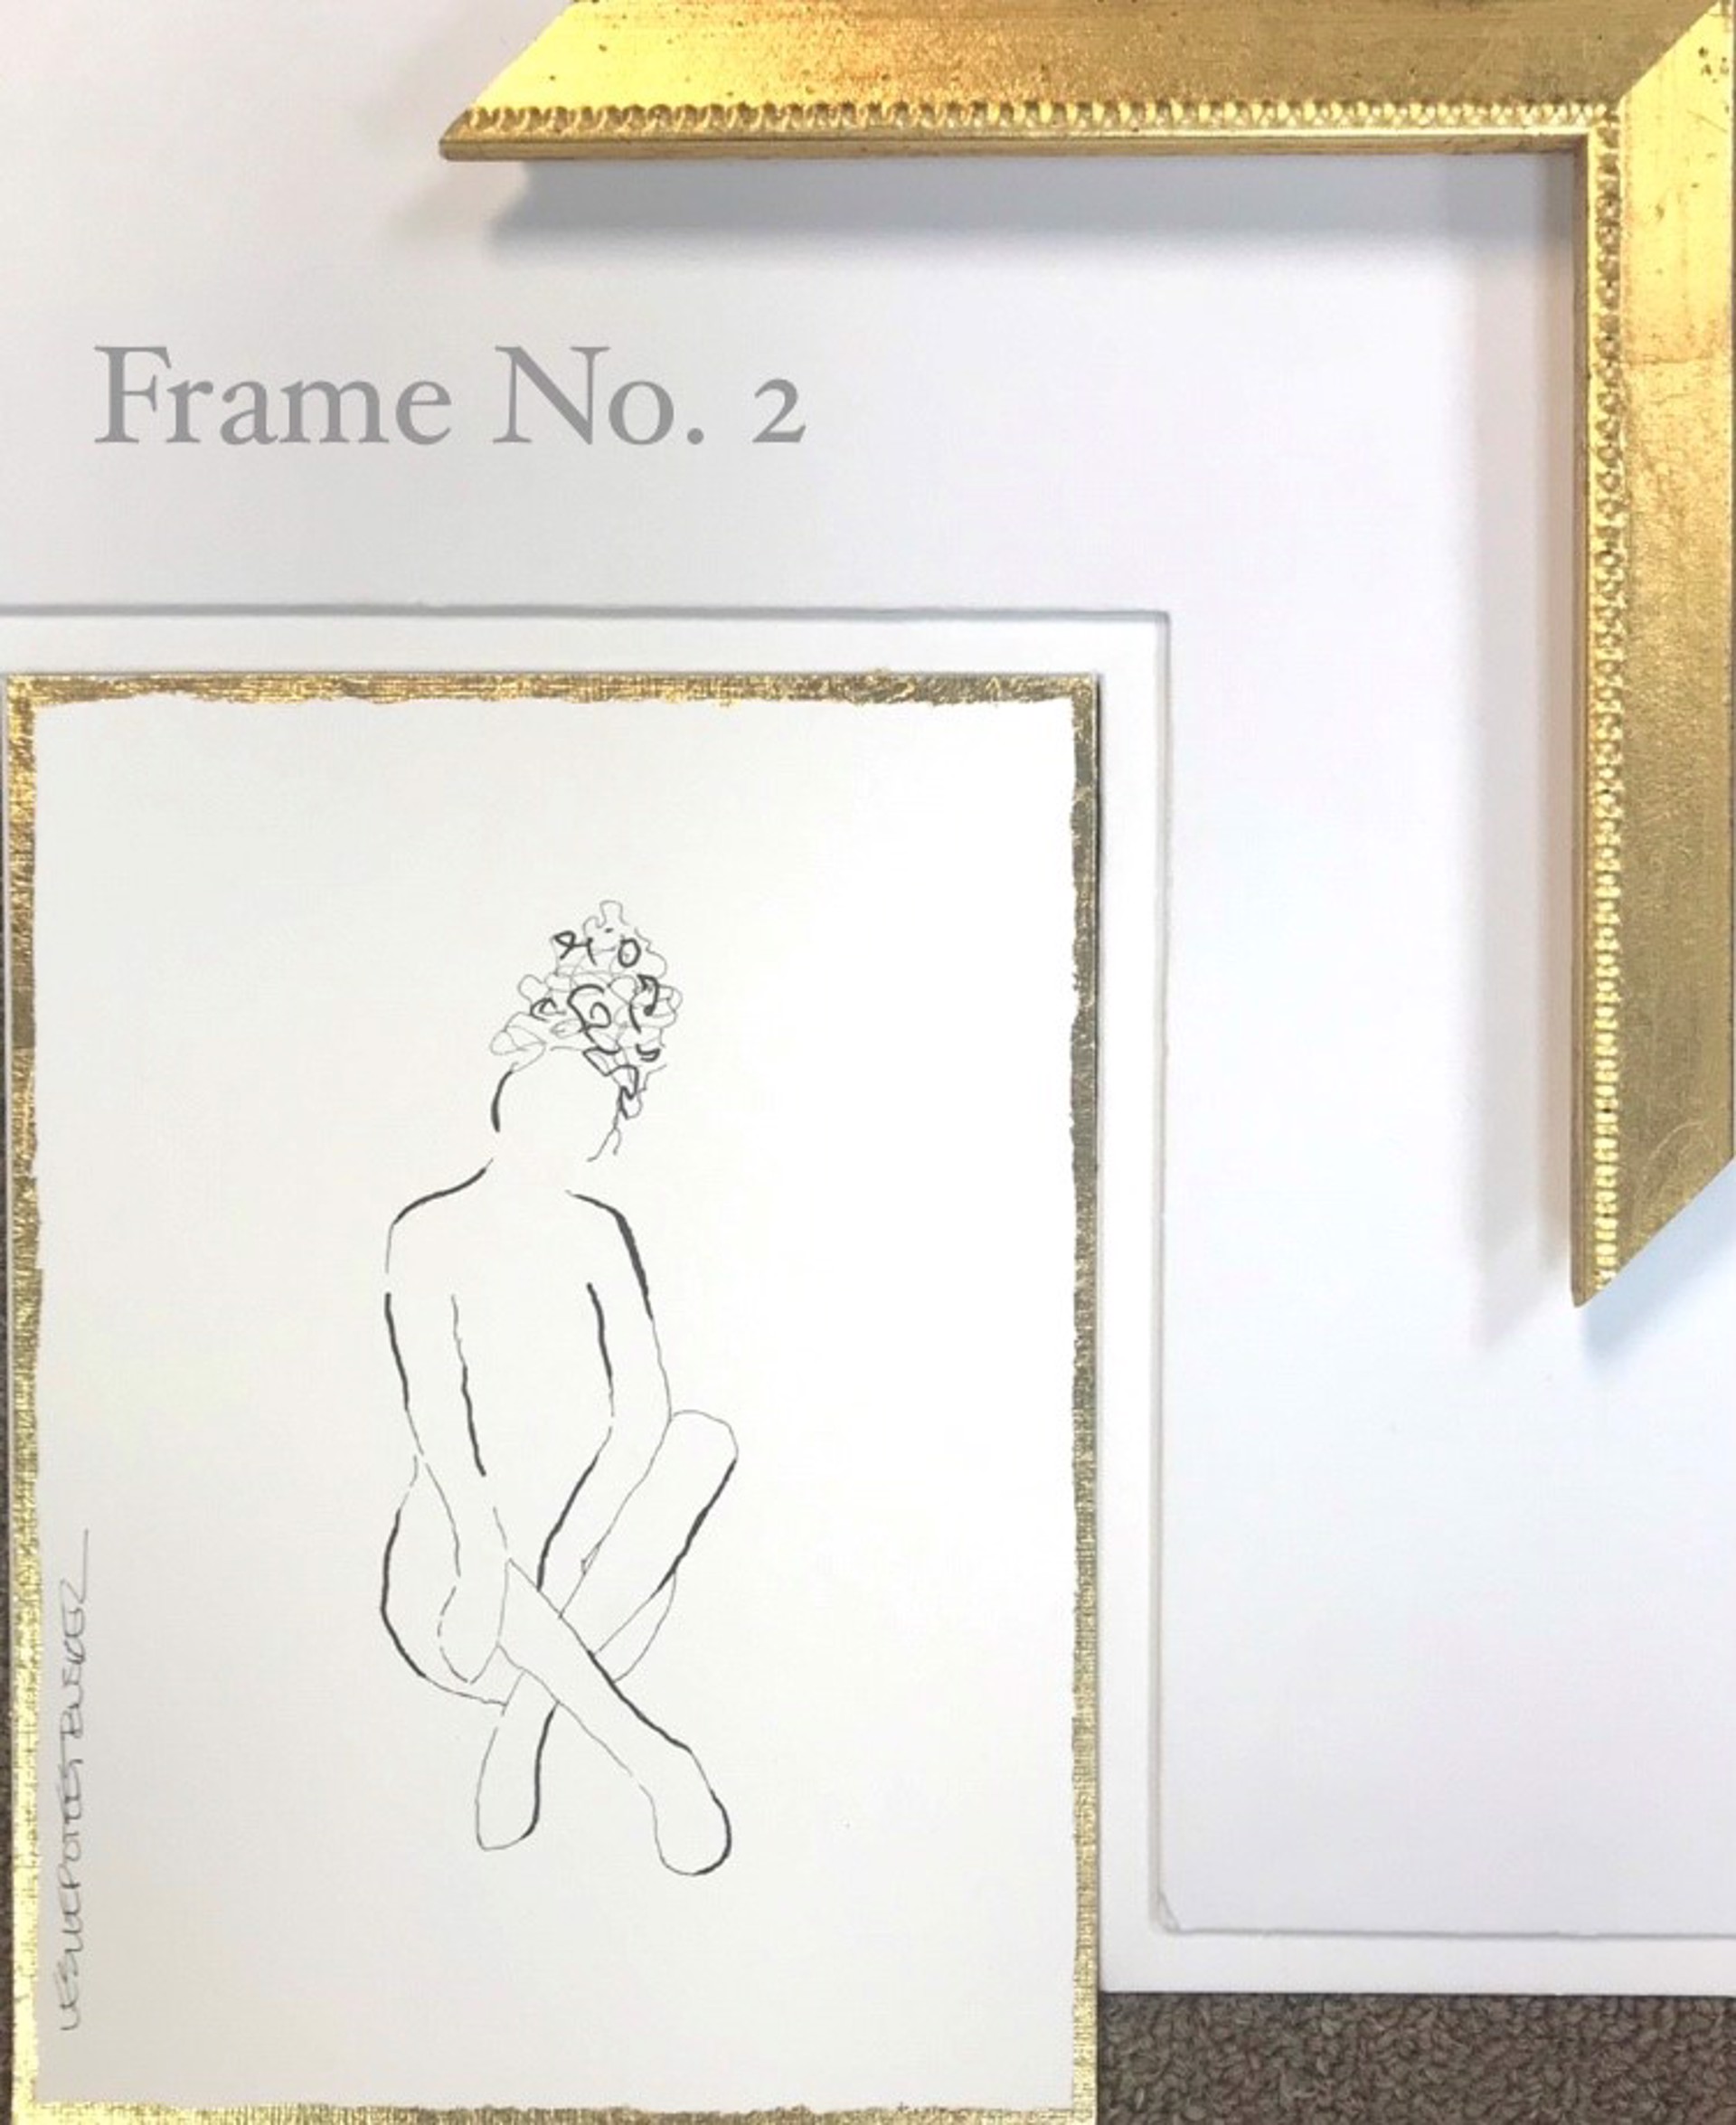 Frame No. 2 by Leslie Poteet Busker